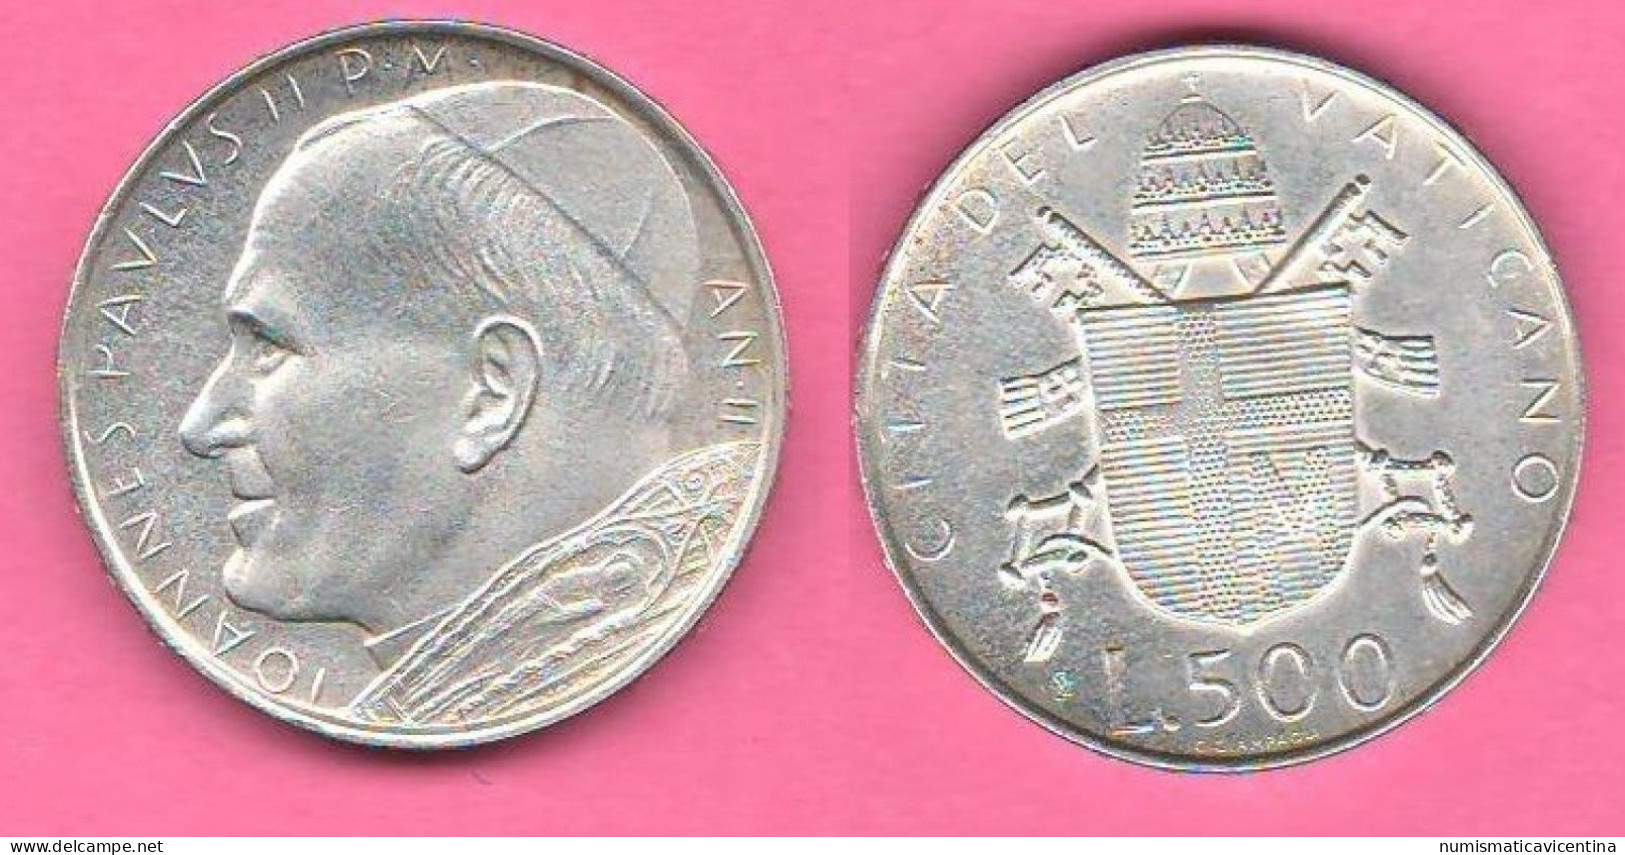 Vaticano 500 Lire 1980 Wojtyla Anno II° Vatican City Italie Italy Silver Coin - Vaticano (Ciudad Del)